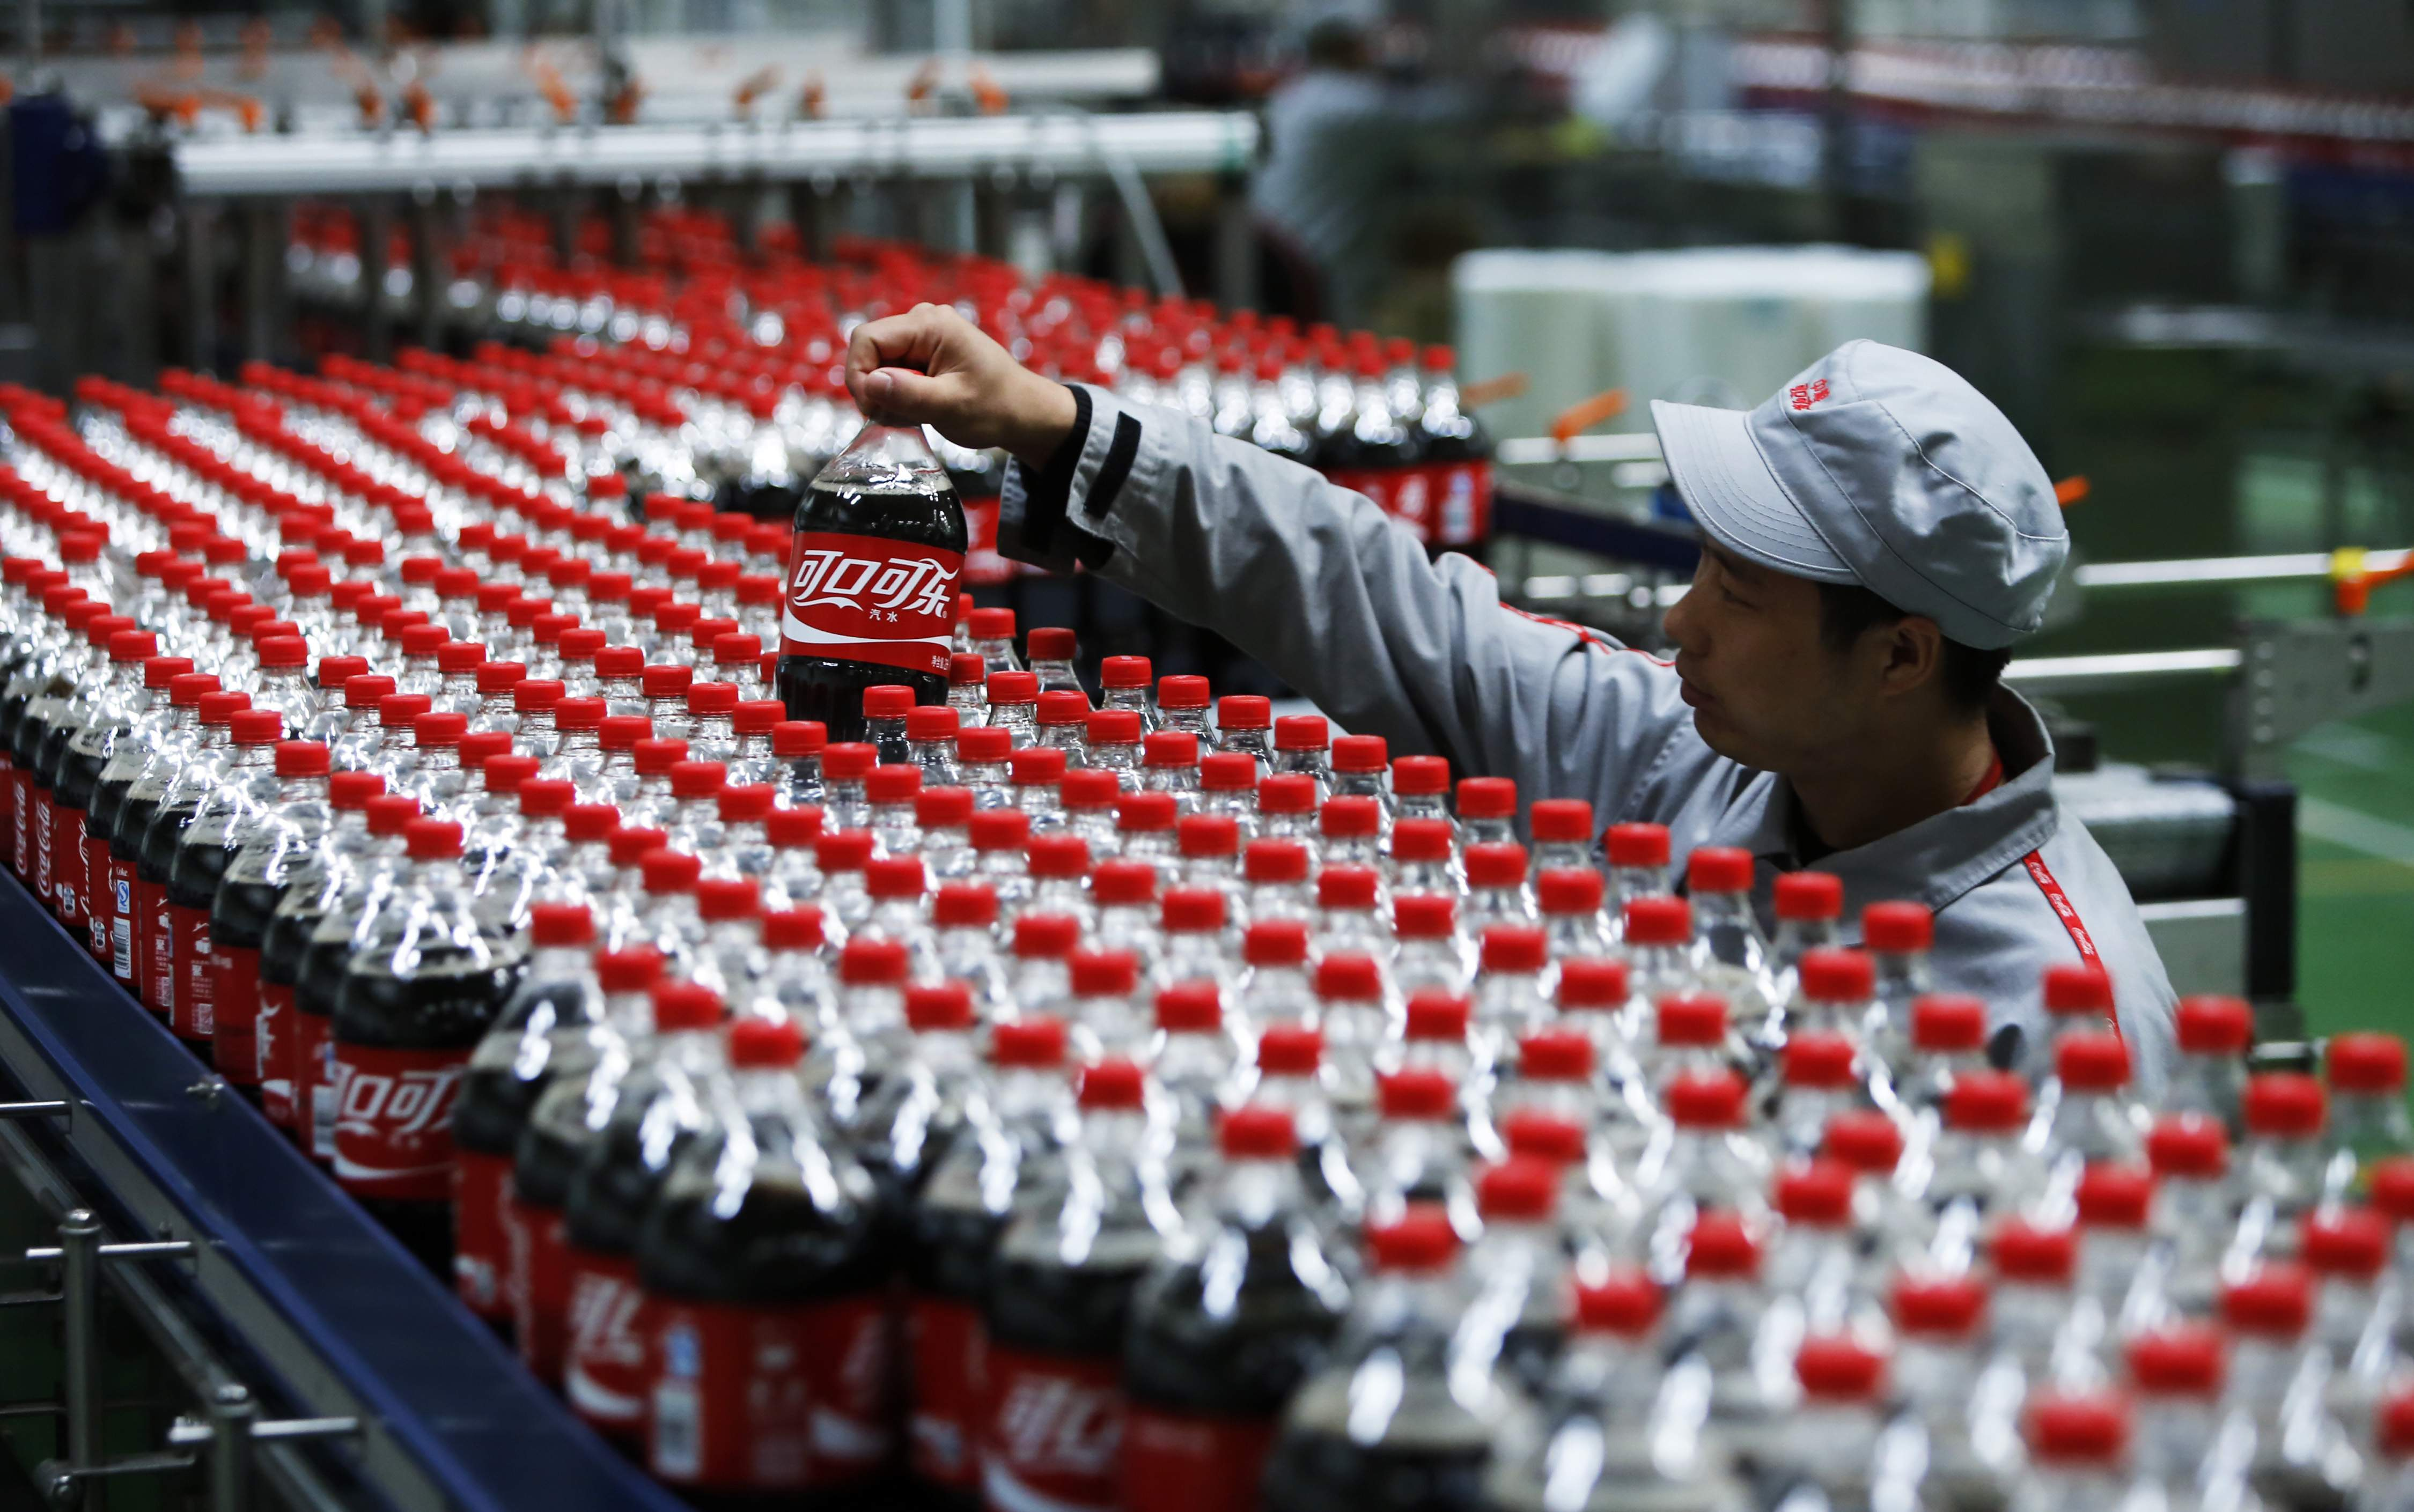 Vagas de Emprego Coca-Cola: Descubra as Oportunidades em Aberto